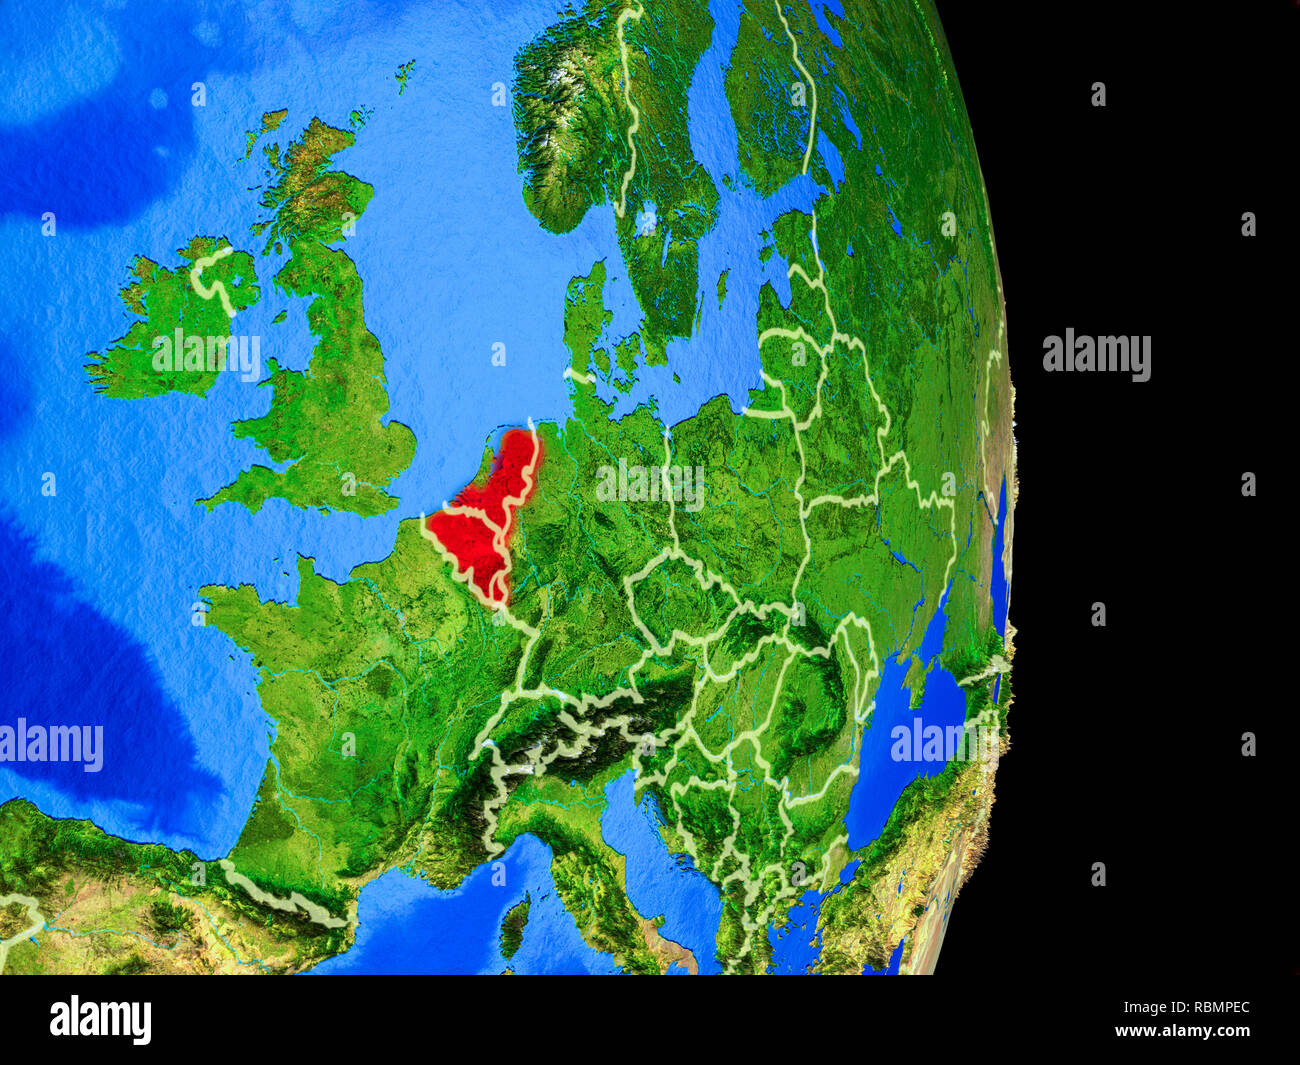 L'Union Benelux sur modèle réaliste de la planète Terre avec des frontières du pays et très détaillée de la surface de la planète. 3D illustration. Éléments de cette image furnis Banque D'Images